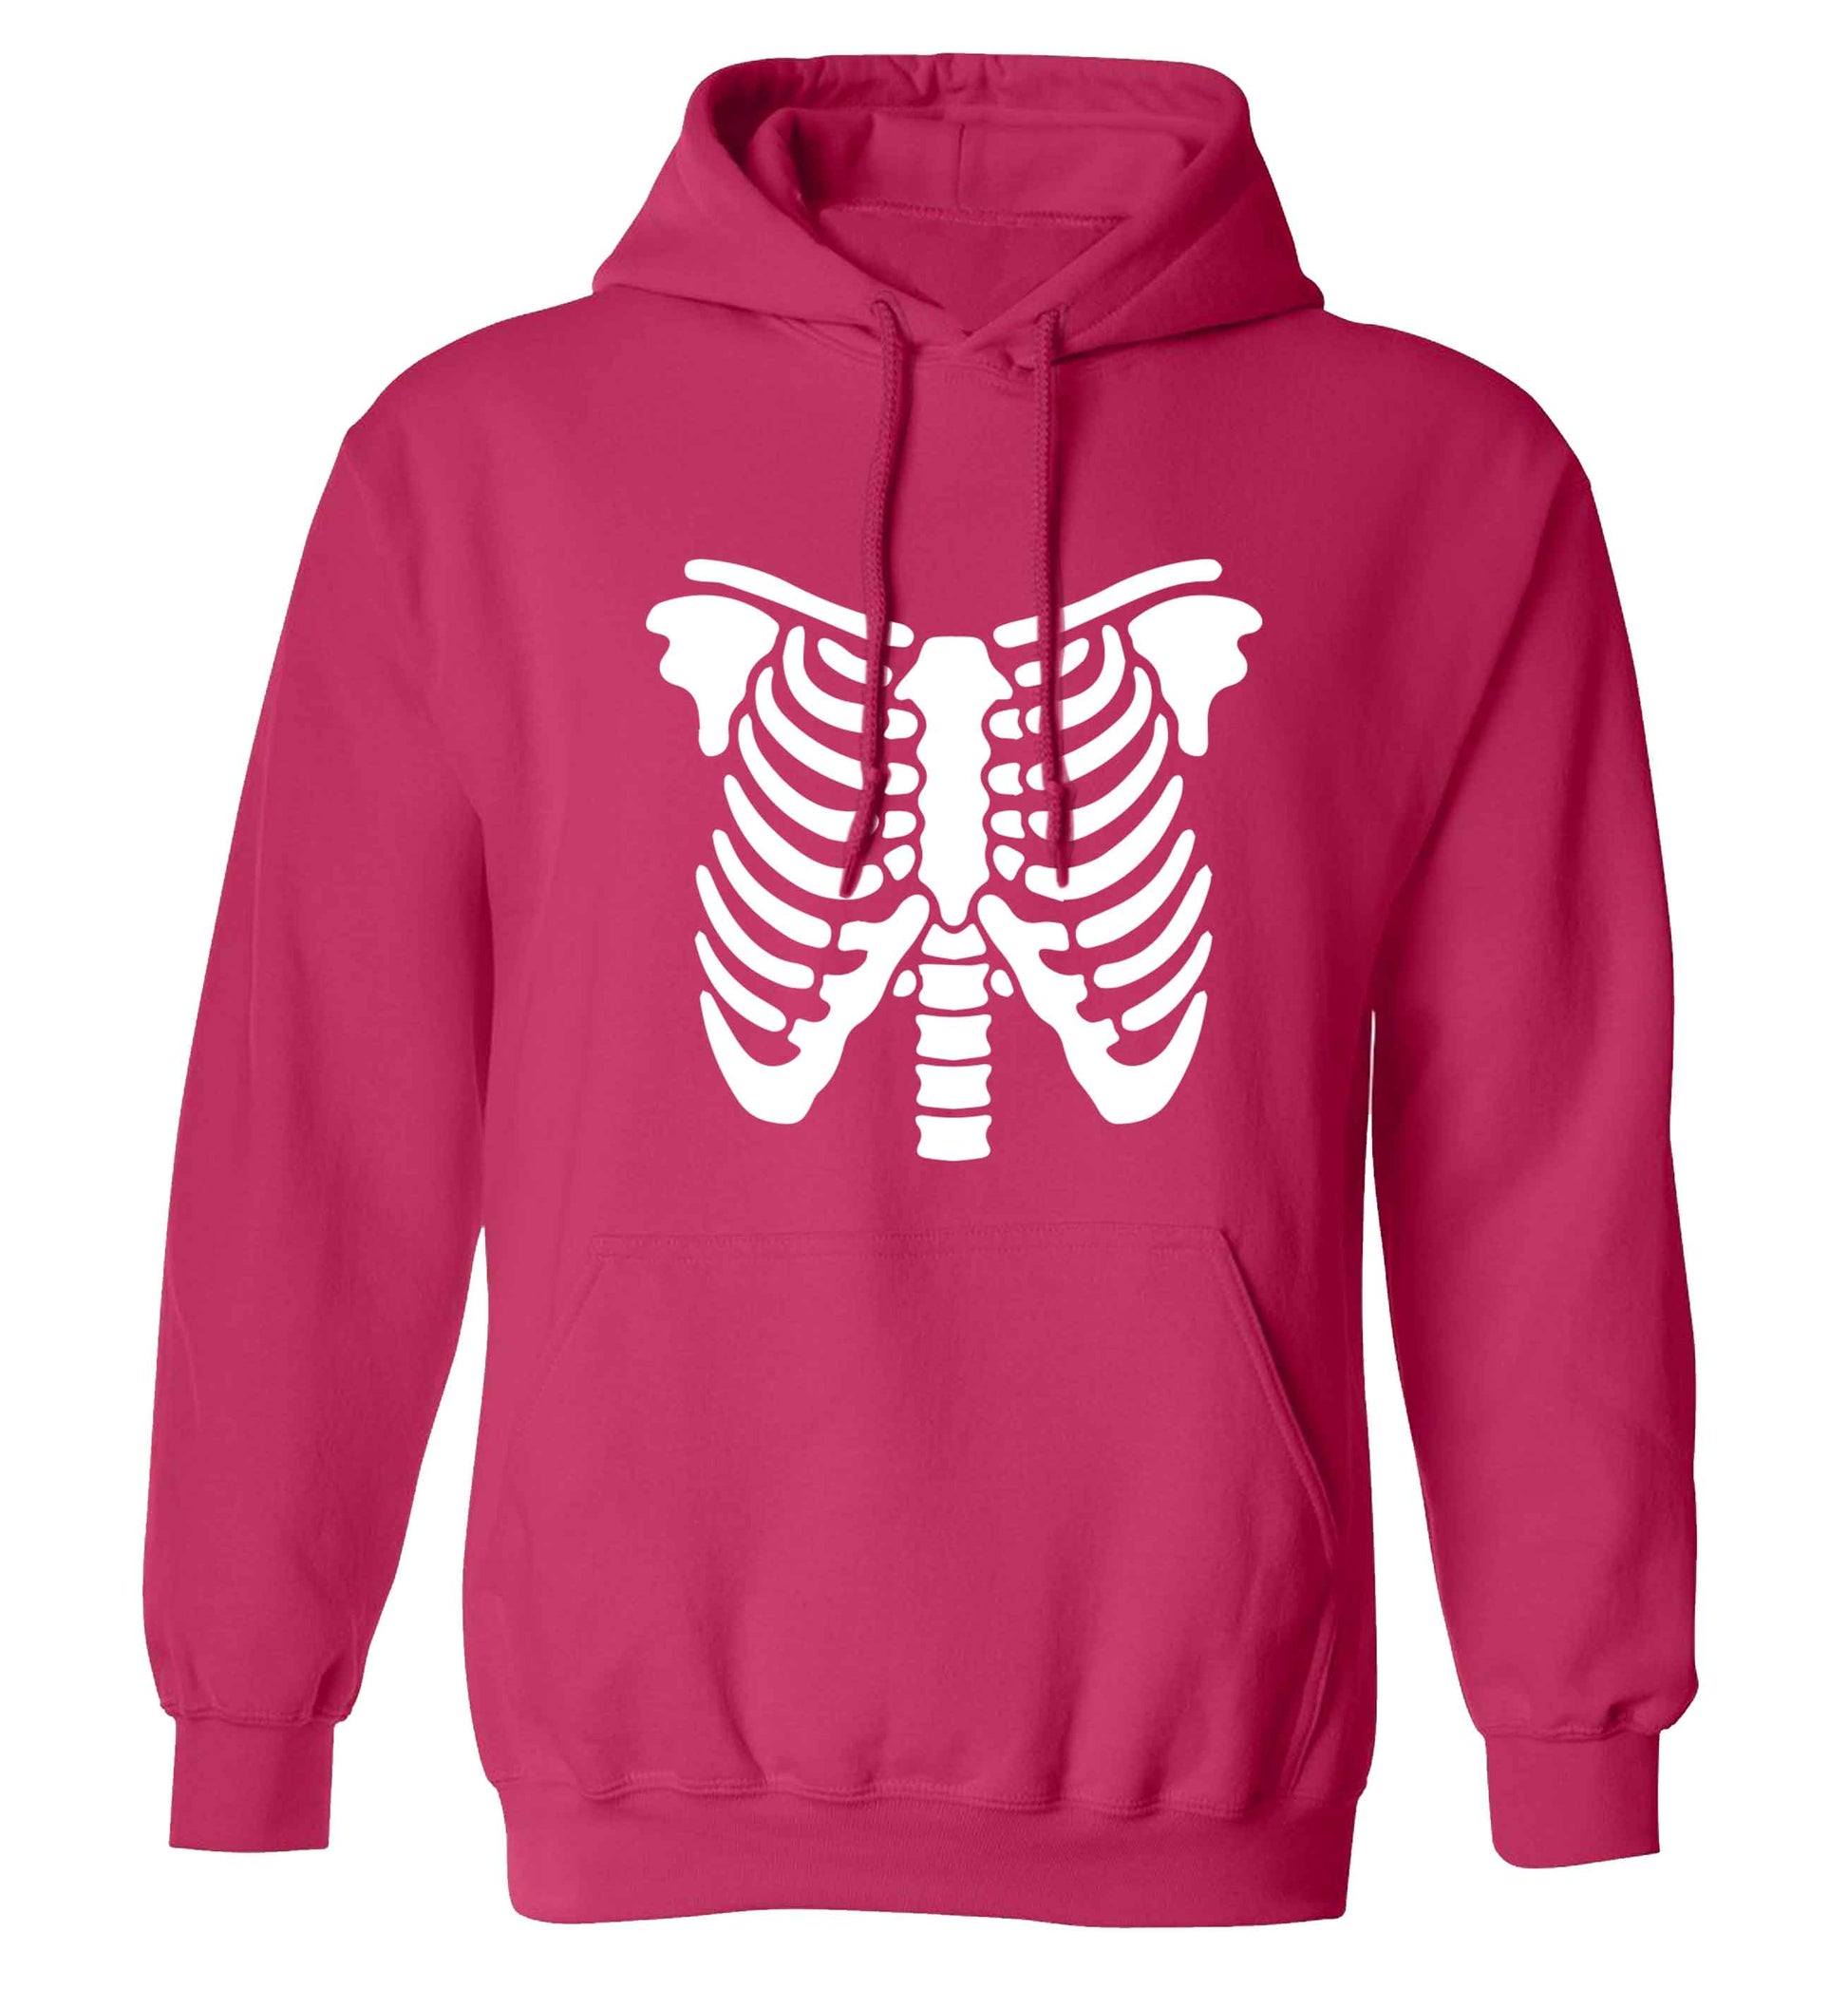 Skeleton ribcage adults unisex pink hoodie 2XL